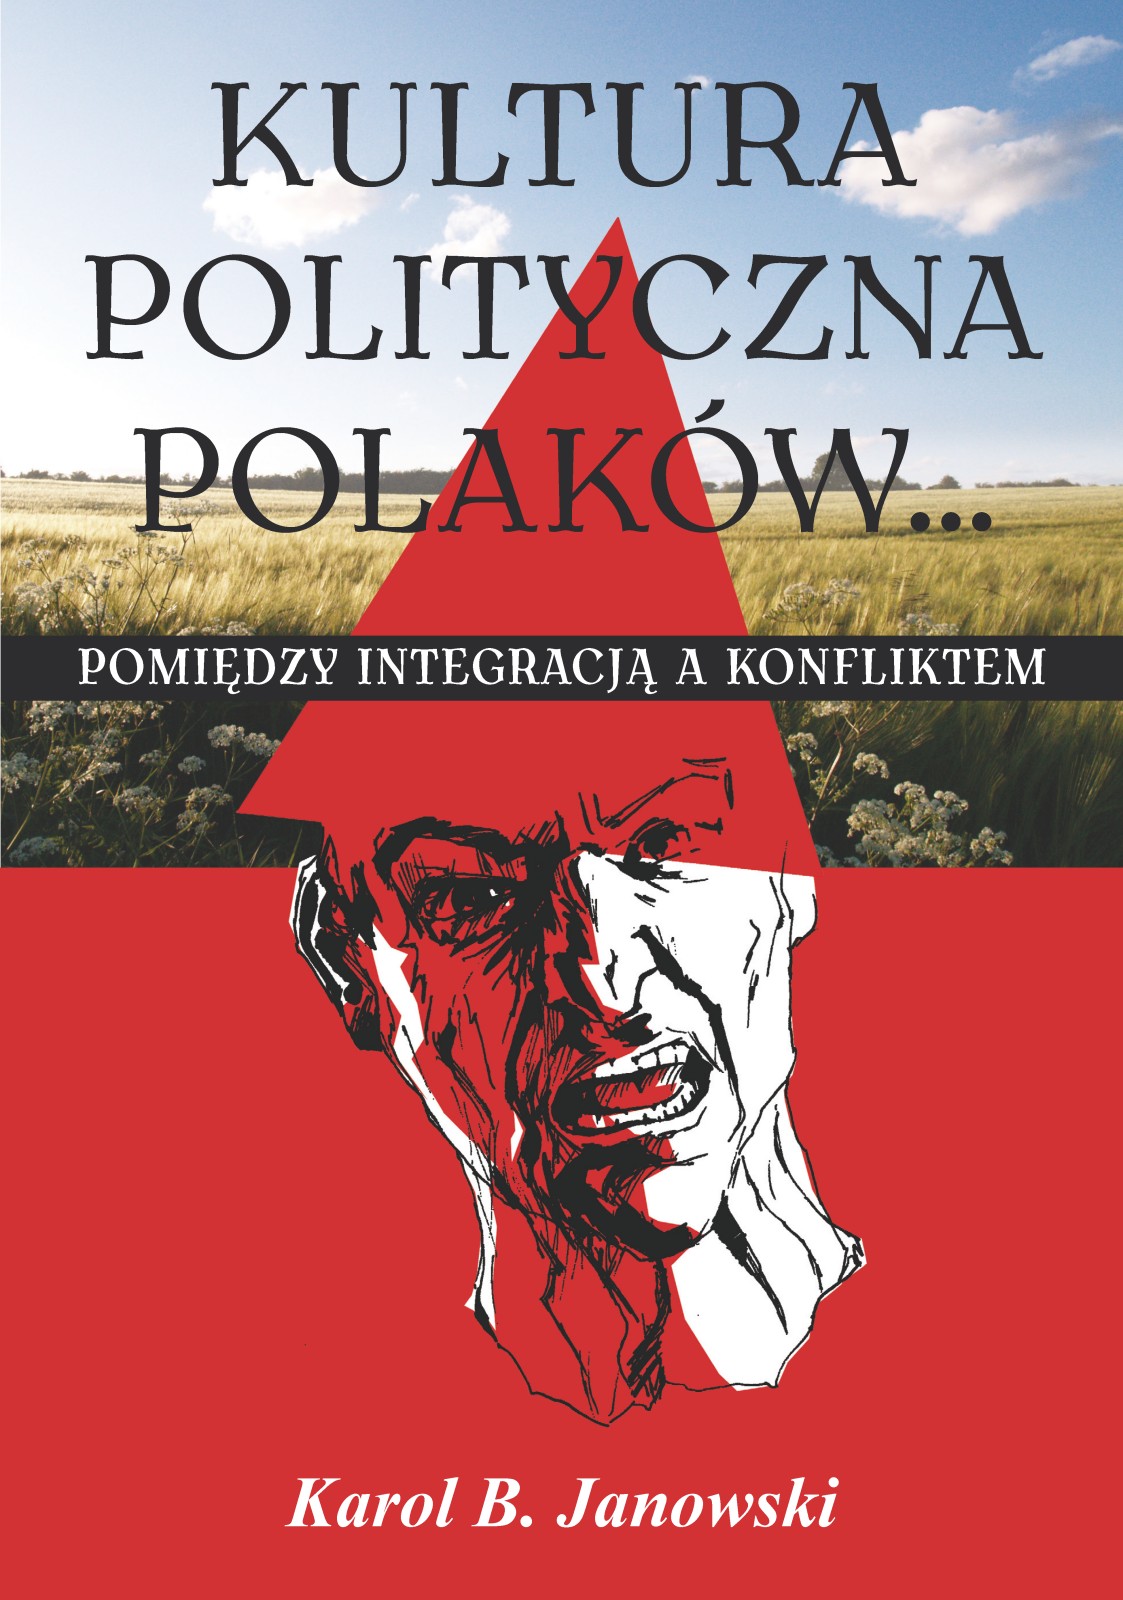 Kultura Polityczna Polakow_. pomiedzy integracja a konfliktem - Karol B. Janowski